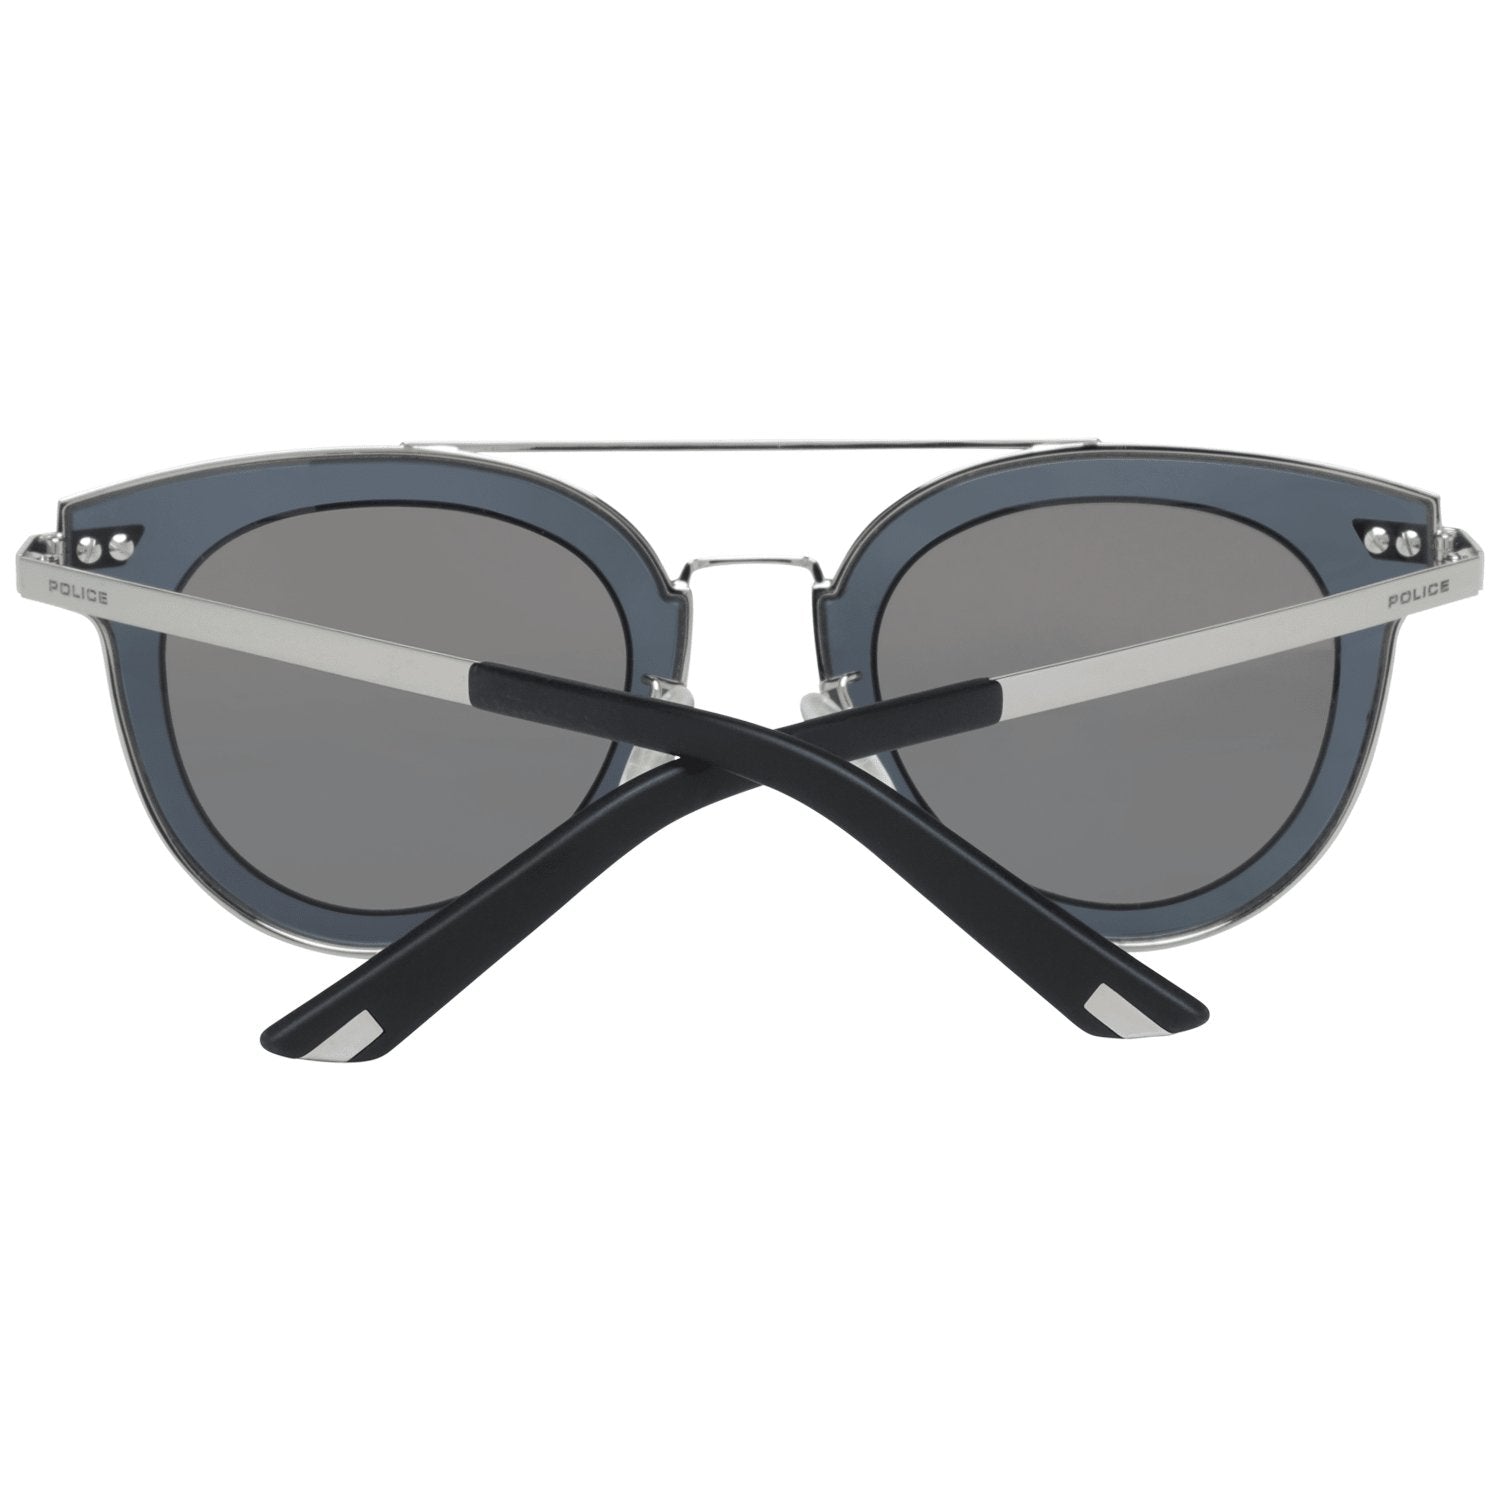 Police Silver Sunglasses for man - Fizigo